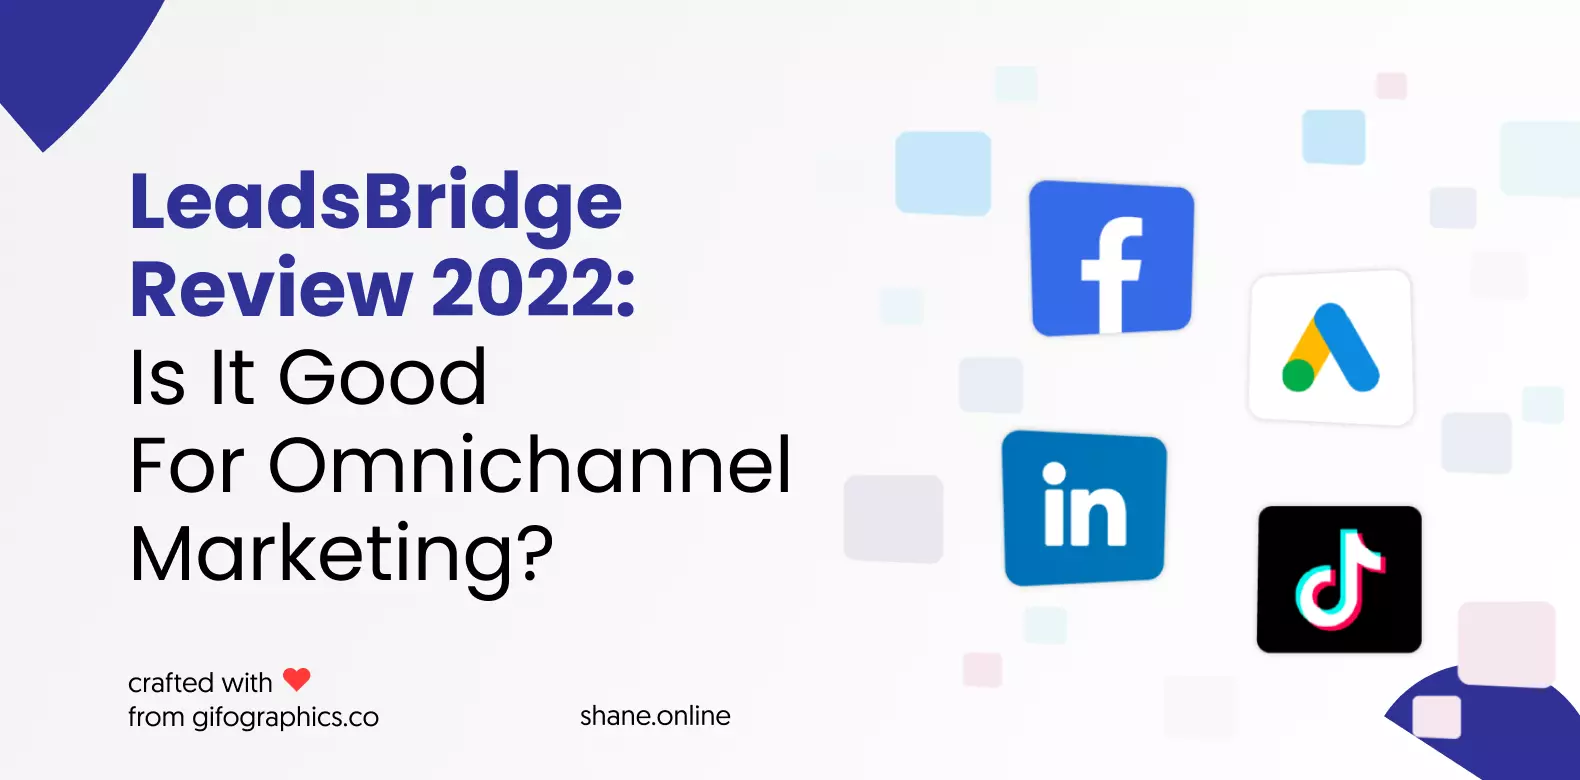 LeadsBridge Review 2022: Is It Good For Omnichannel Marketing?